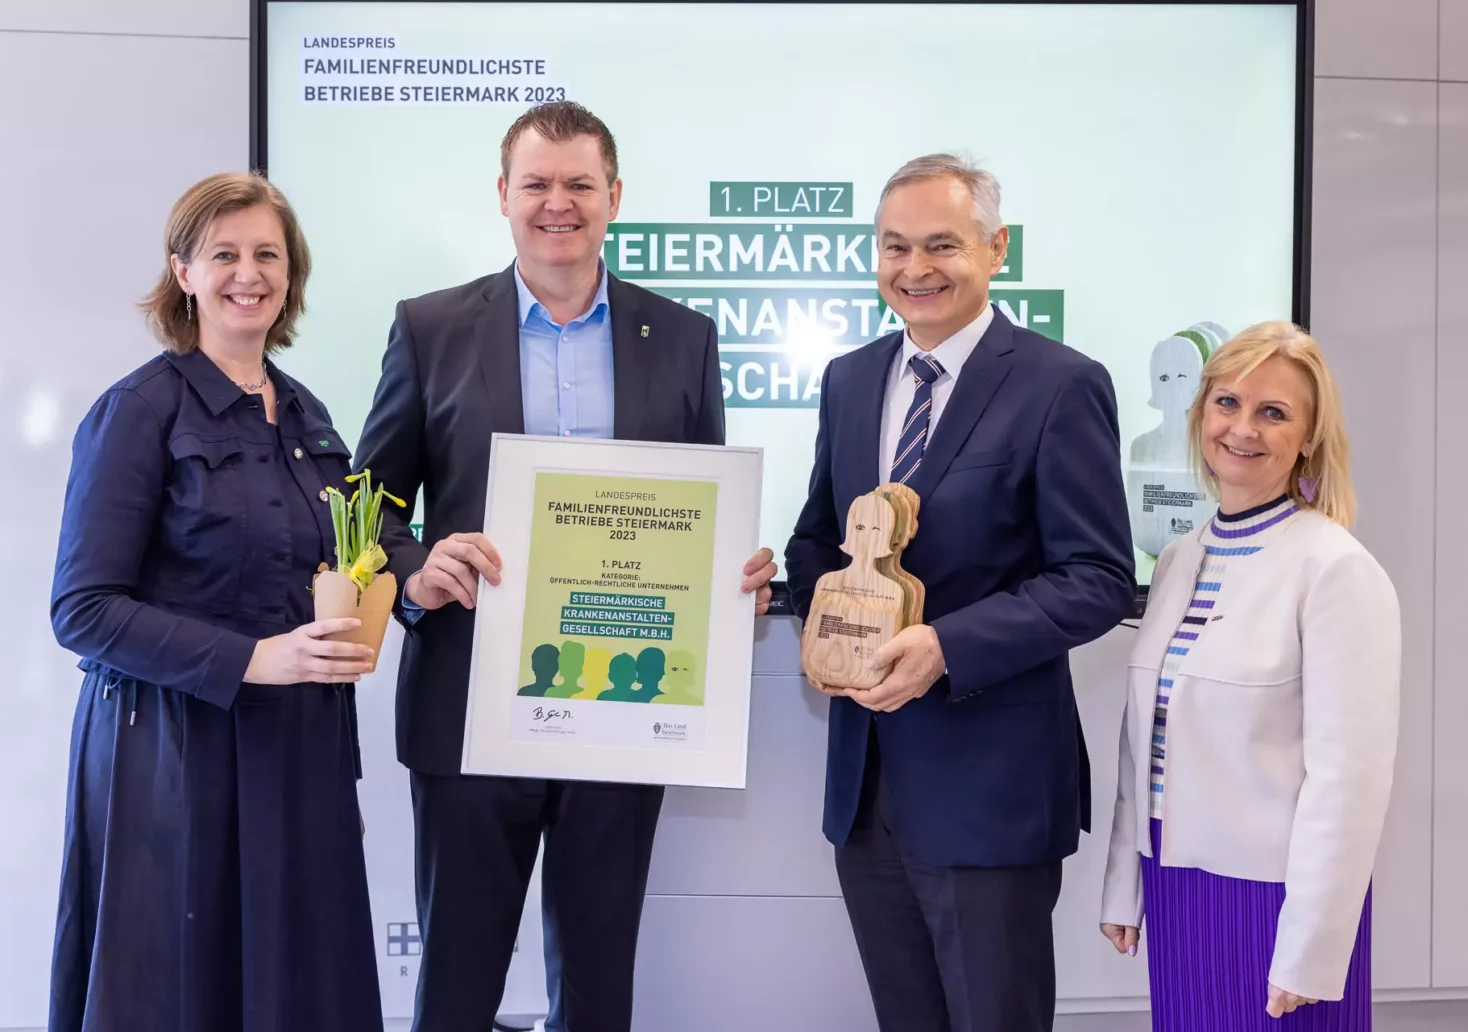 „Menschen helfen Menschen“: KAGes ist Steiermarks familienfreundlichster Betrieb